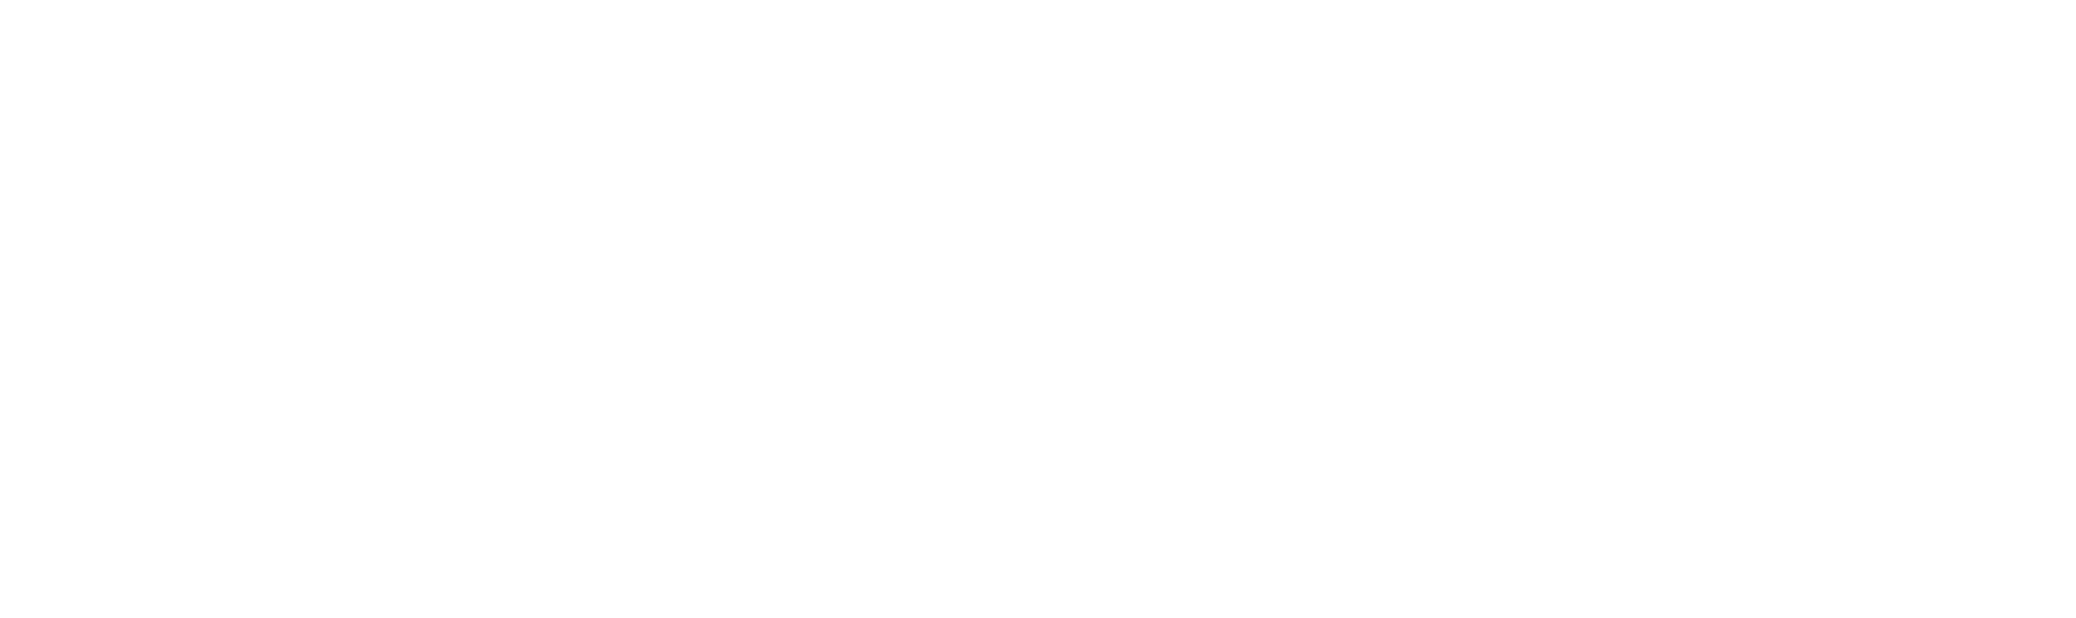 FREE ART FAIR